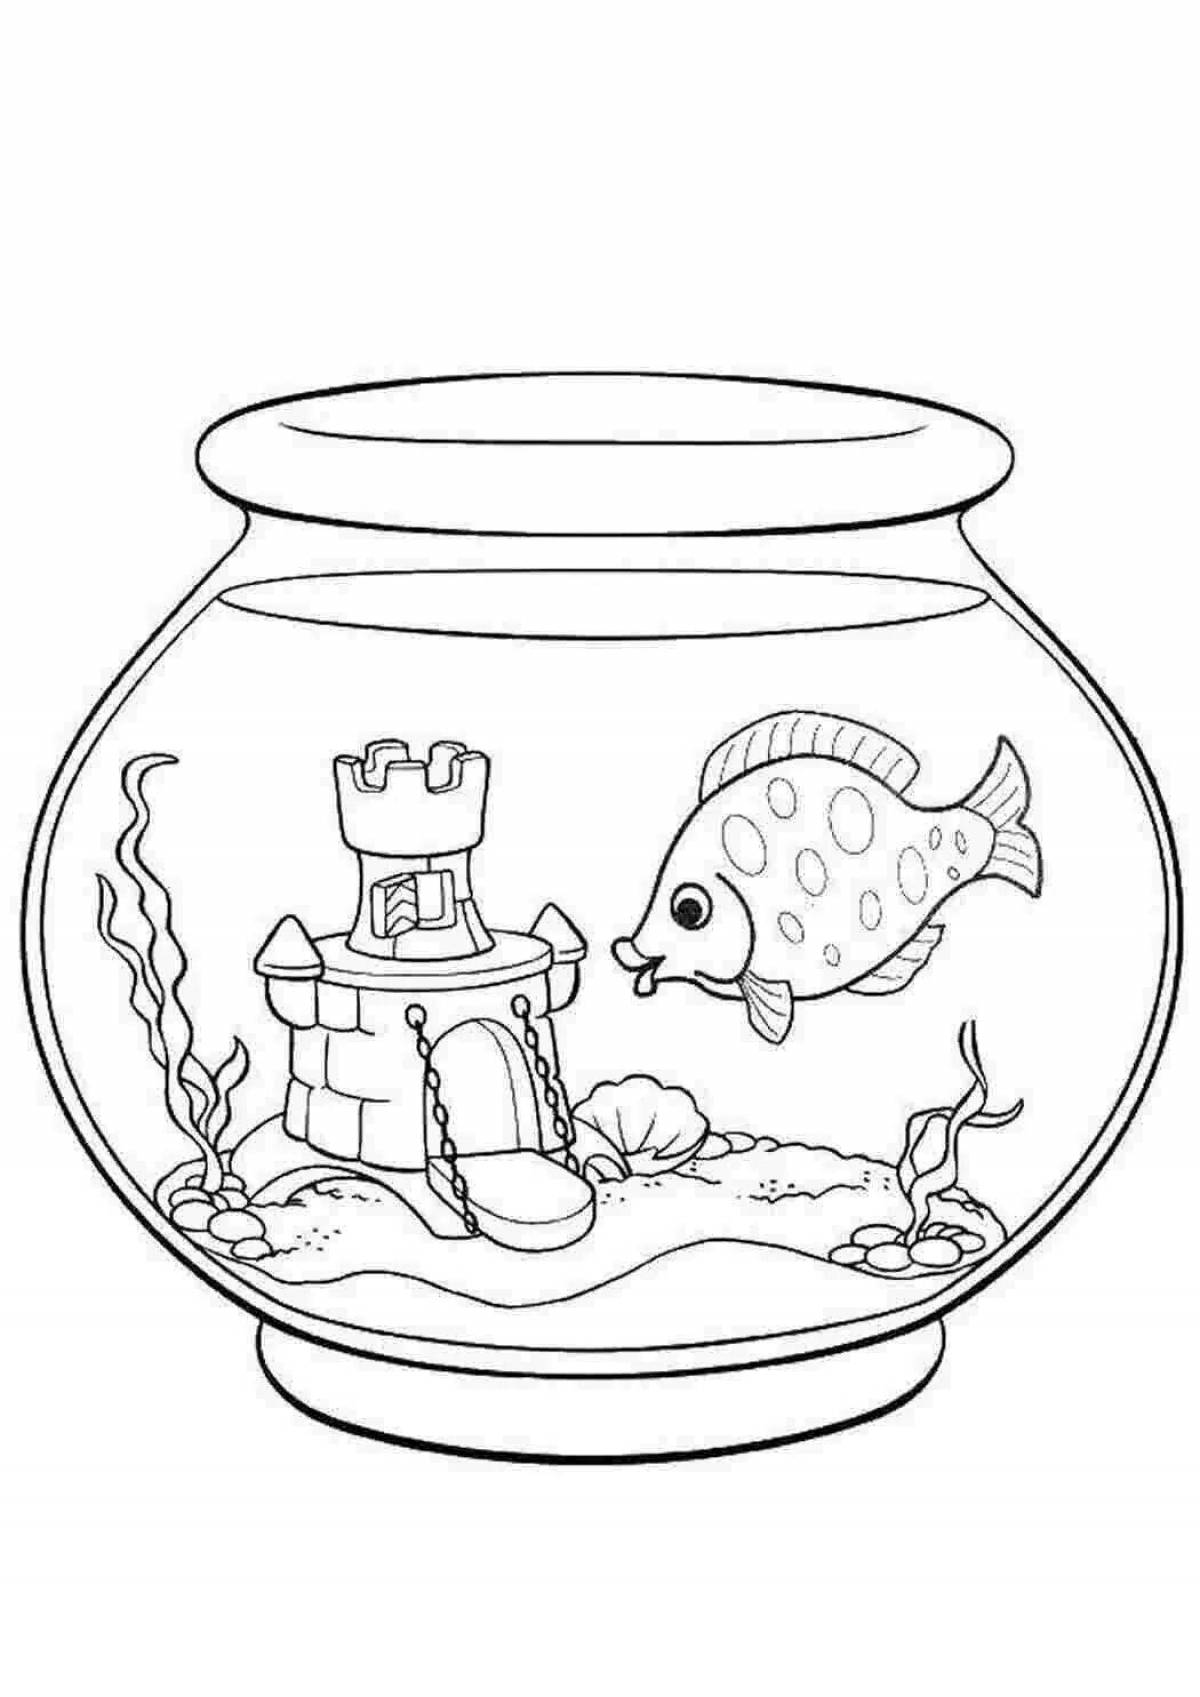 Fun aquarium fish coloring book for kids